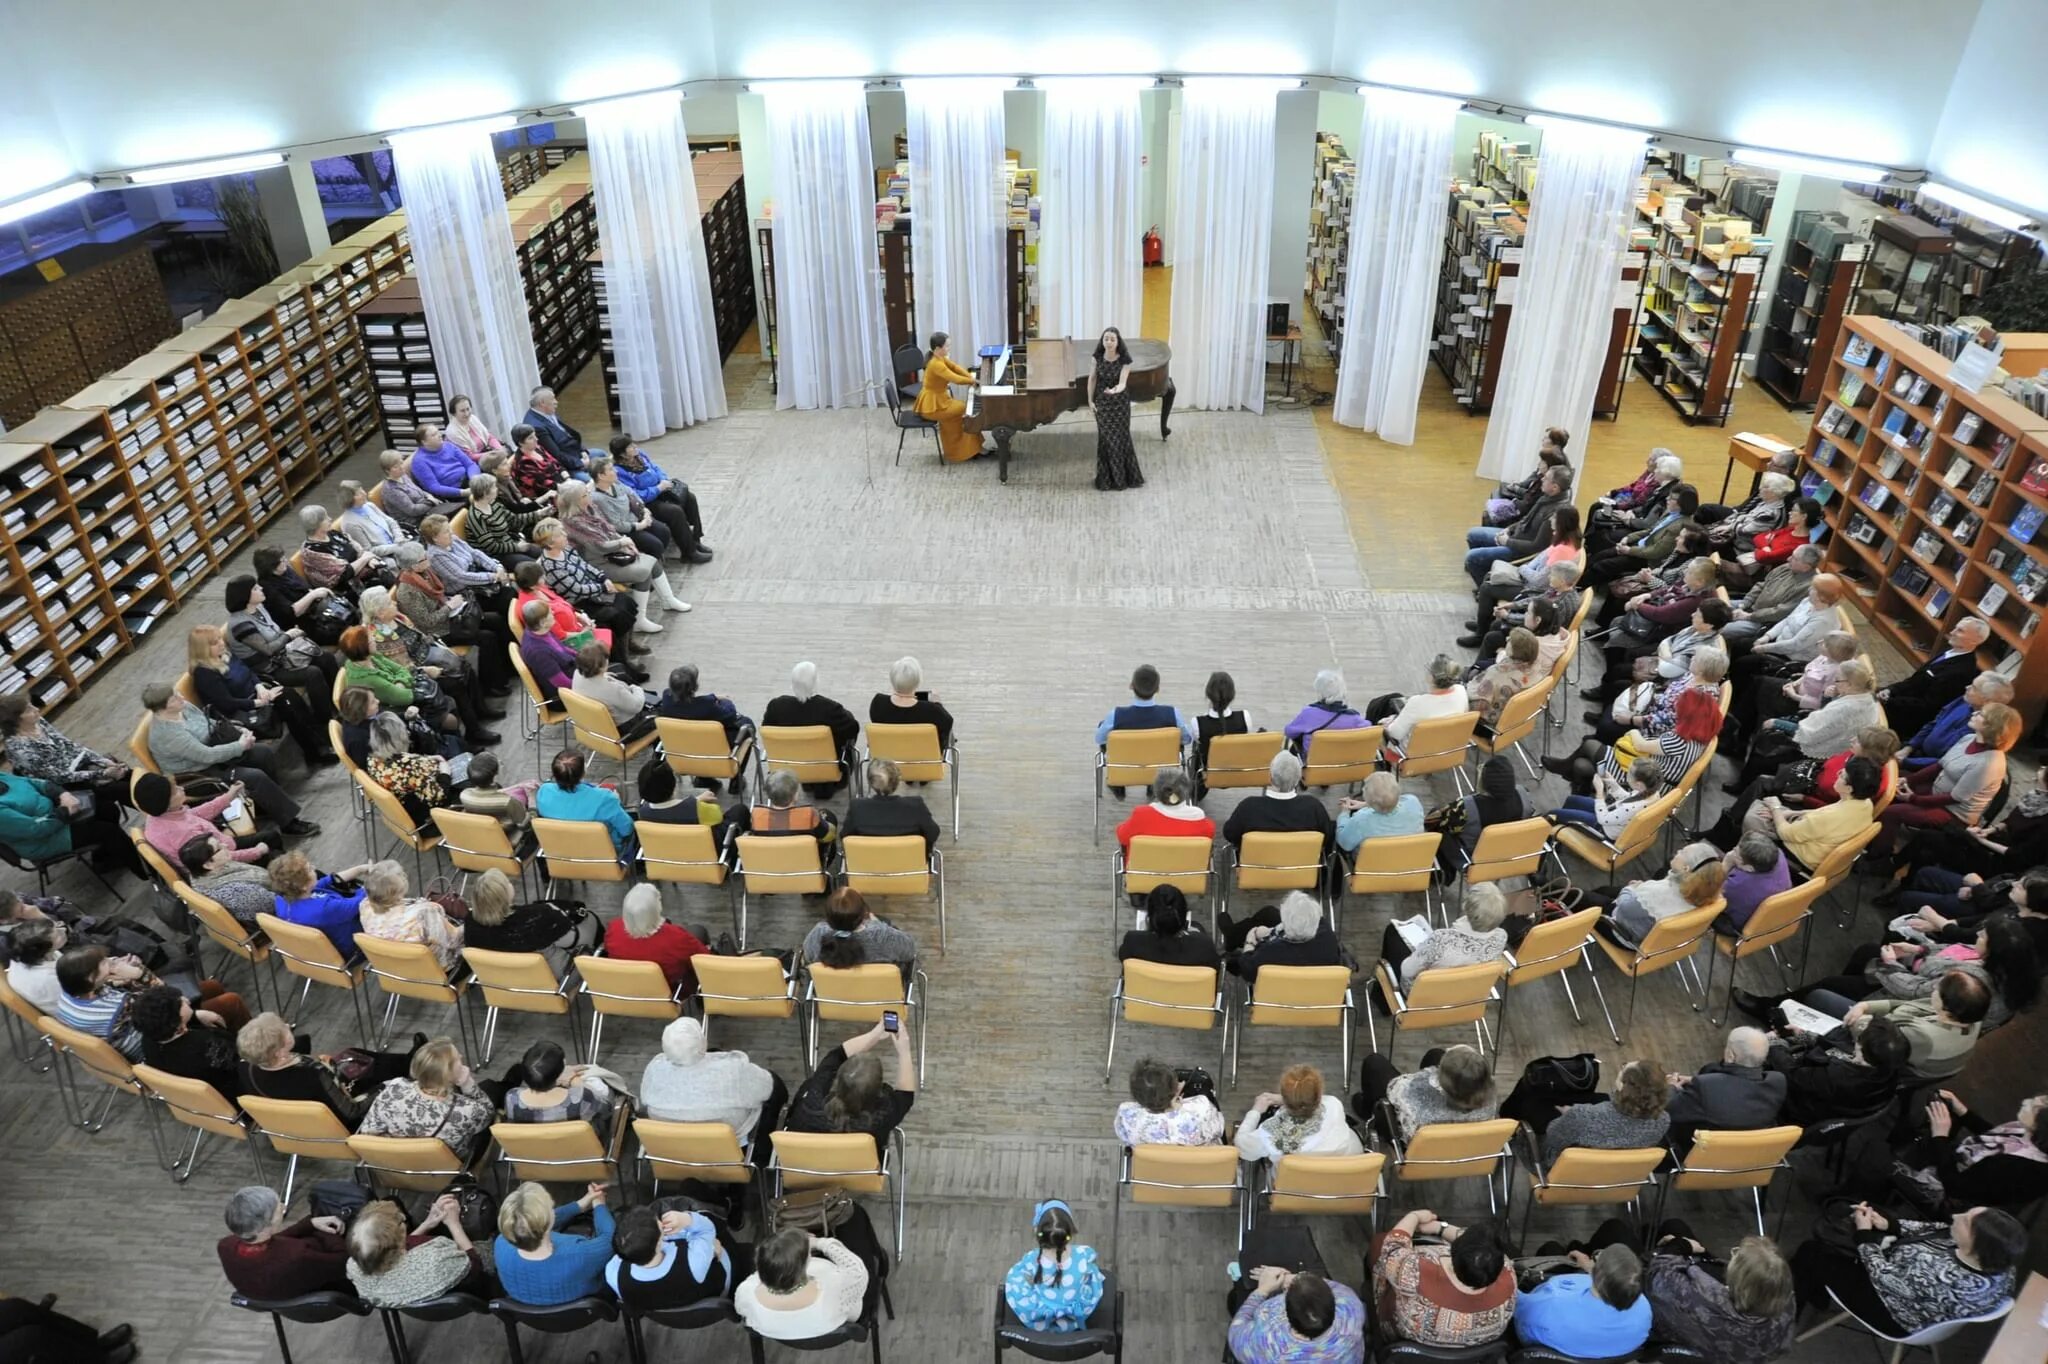 Самарская научная библиотека. Библиотека Ленина Самара. Самарская областная библиотека внутри. Театр в библиотеке. Концерт в областной библиотеке Самара.